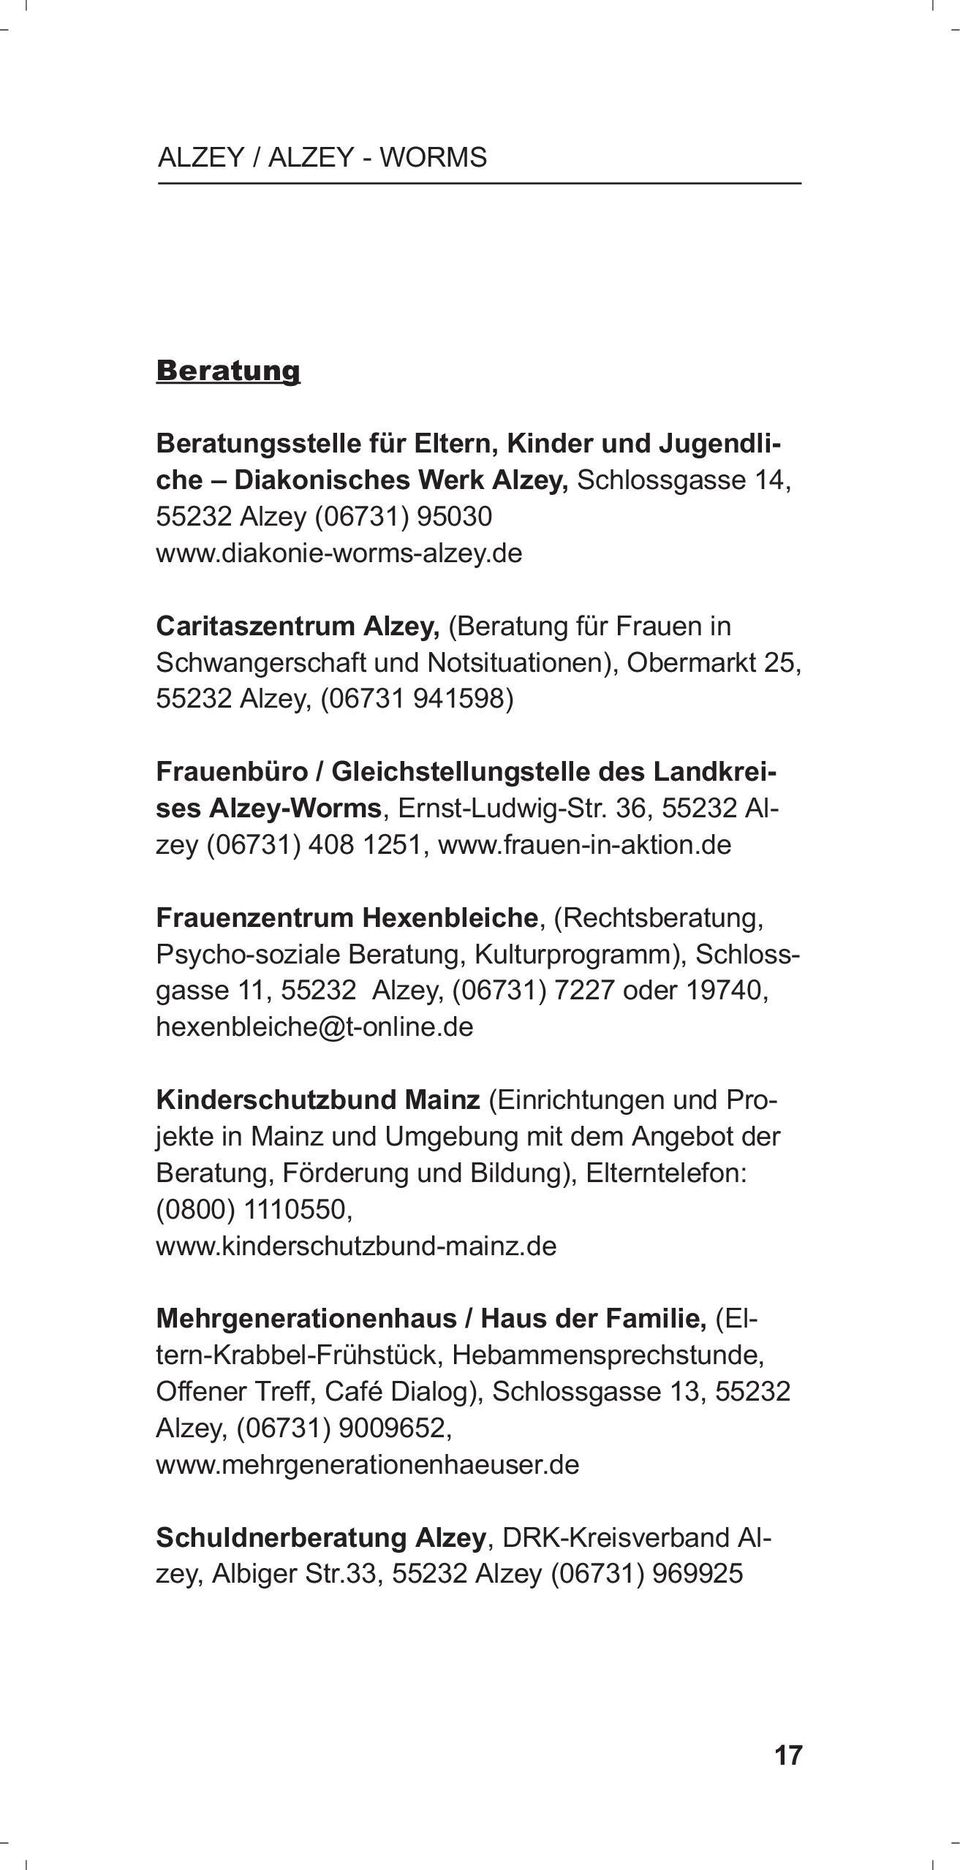 Ernst-Ludwig-Str. 36, 55232 Alzey (06731) 408 1251, www.frauen-in-aktion.